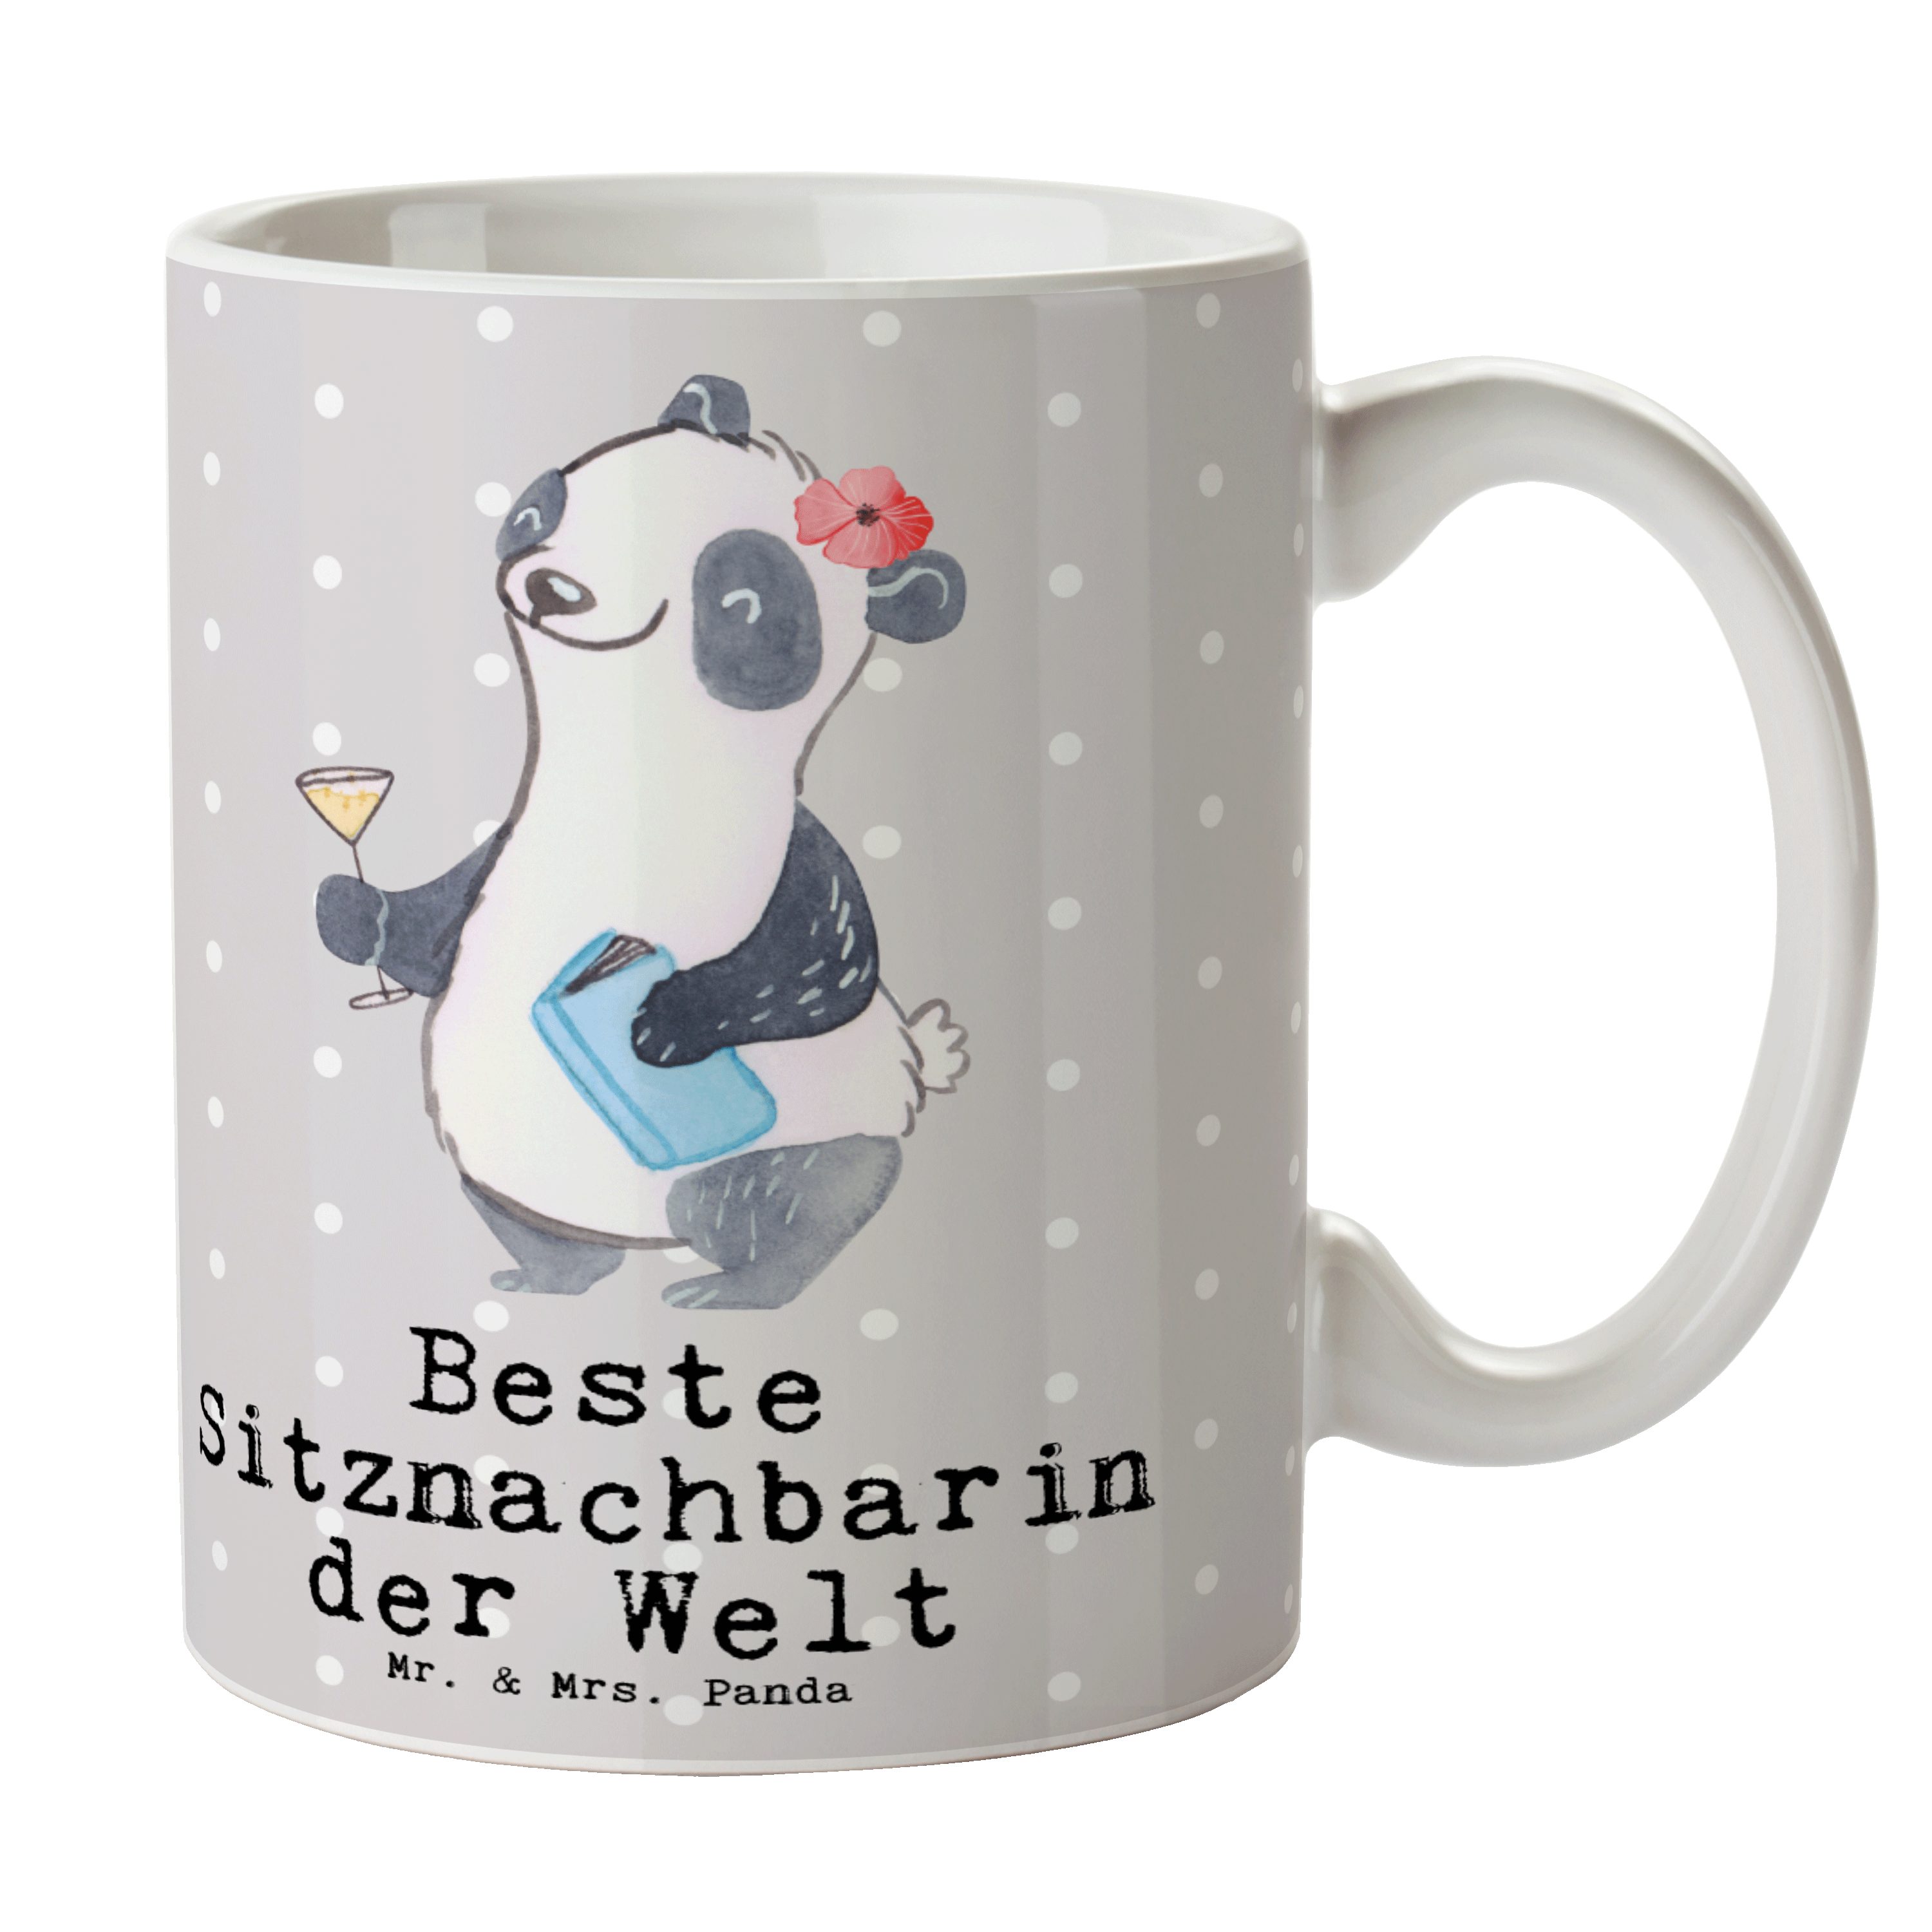 Mr. & Mrs. Panda Tasse Panda Beste Sitznachbarin der Welt - Grau Pastell - Geschenk, Tischna, Keramik